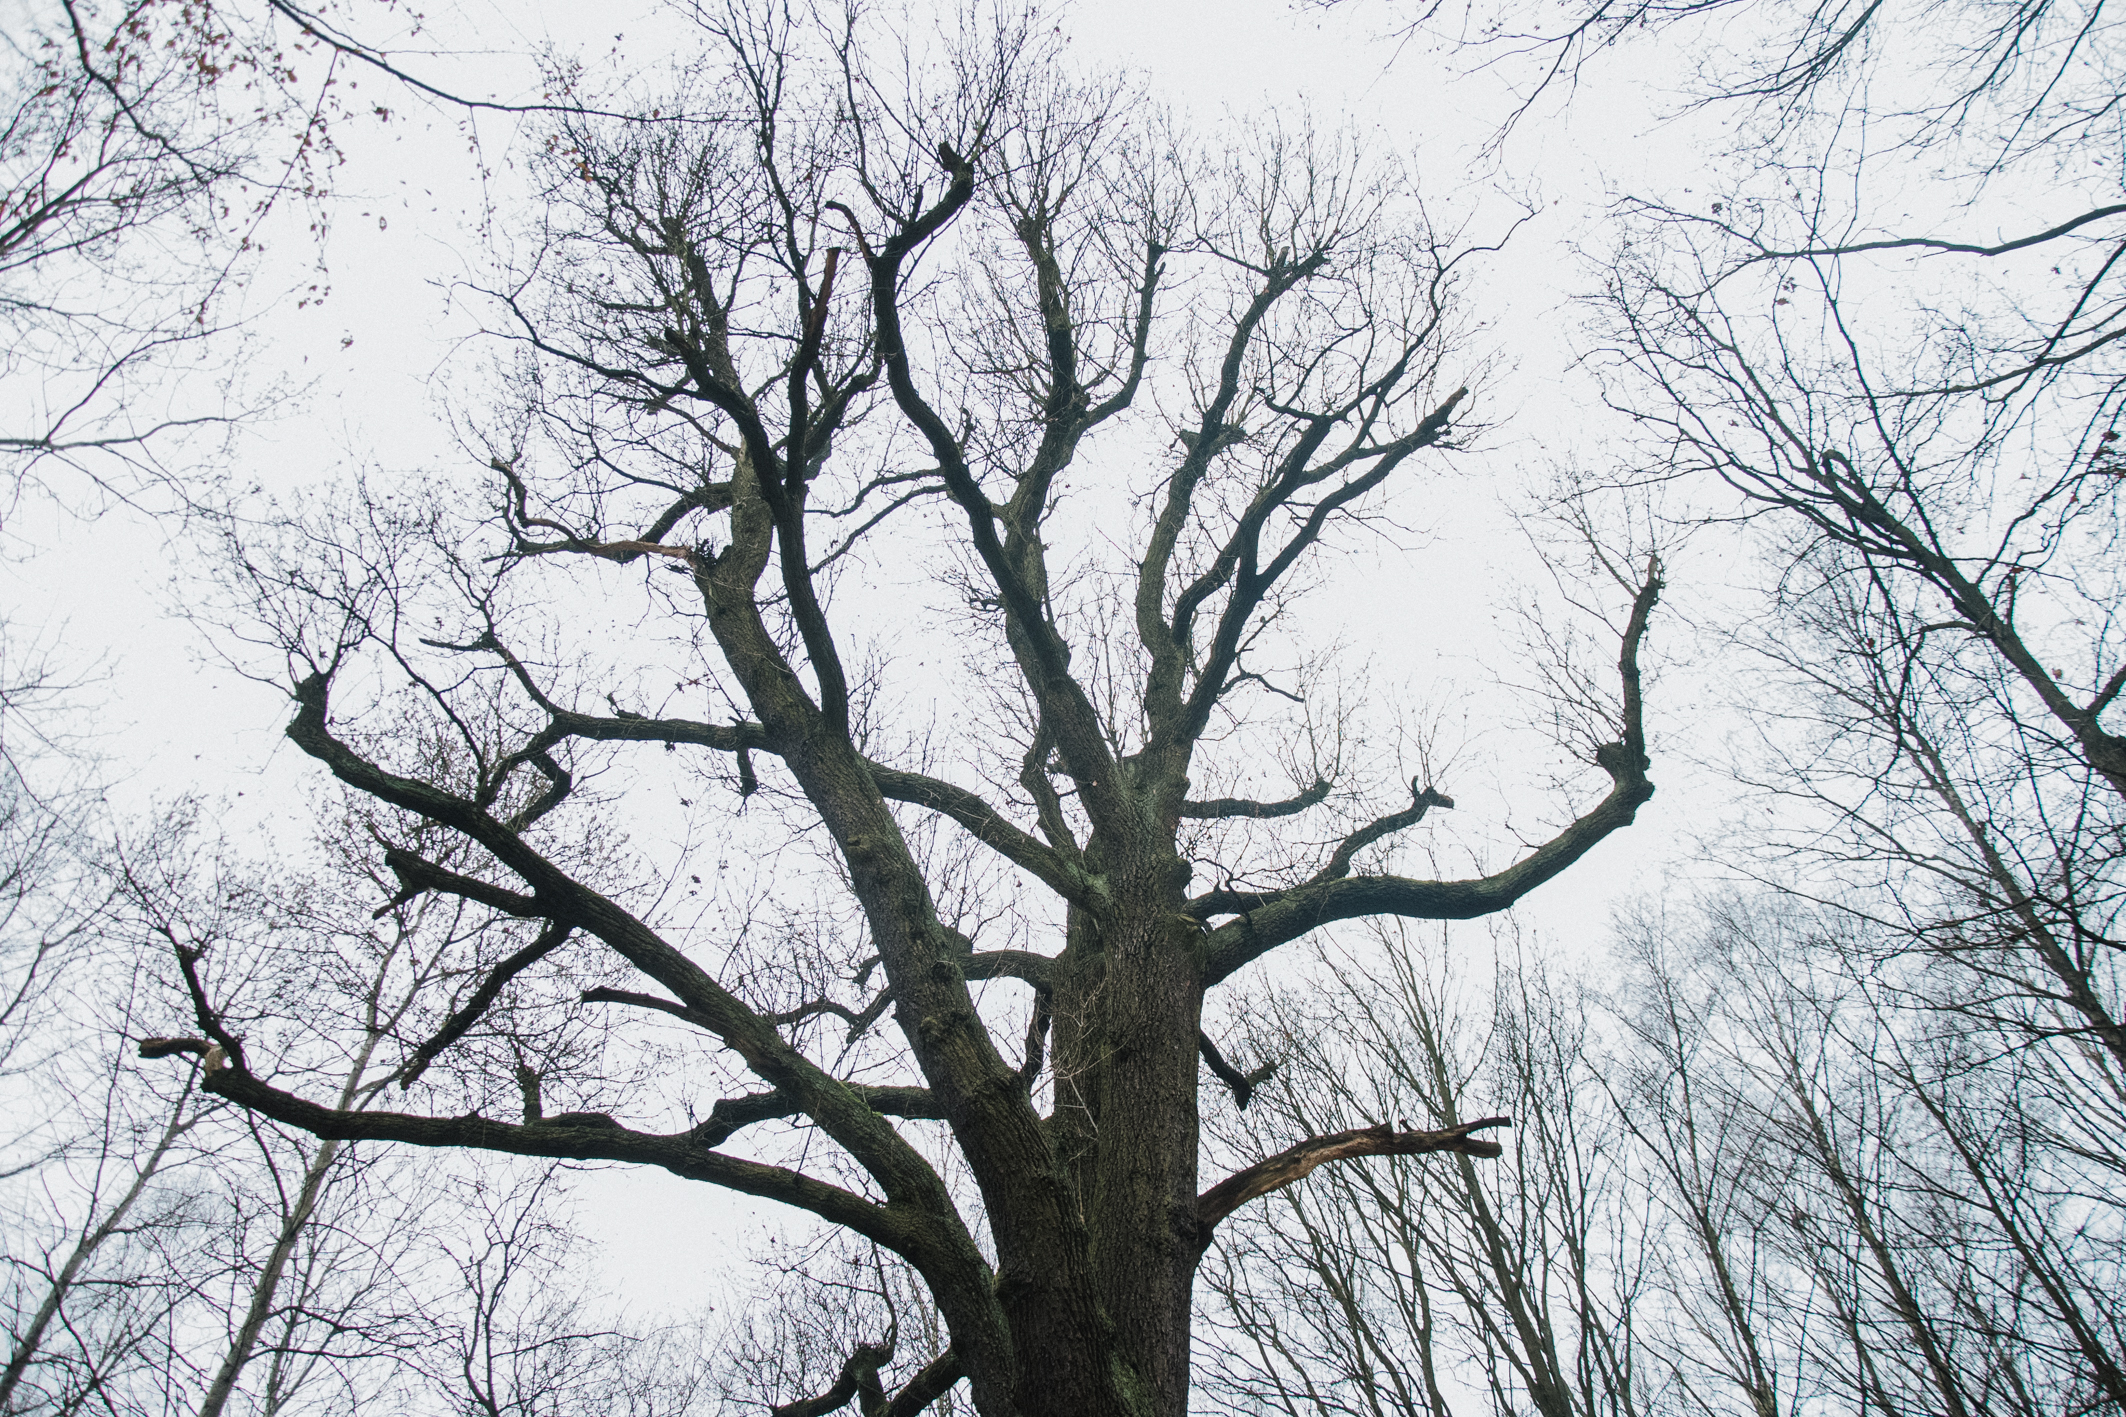 Korona drzewa została w ostatnim czasie uporządkowana, podobnie jak drzewa wokół wiekowego dębu